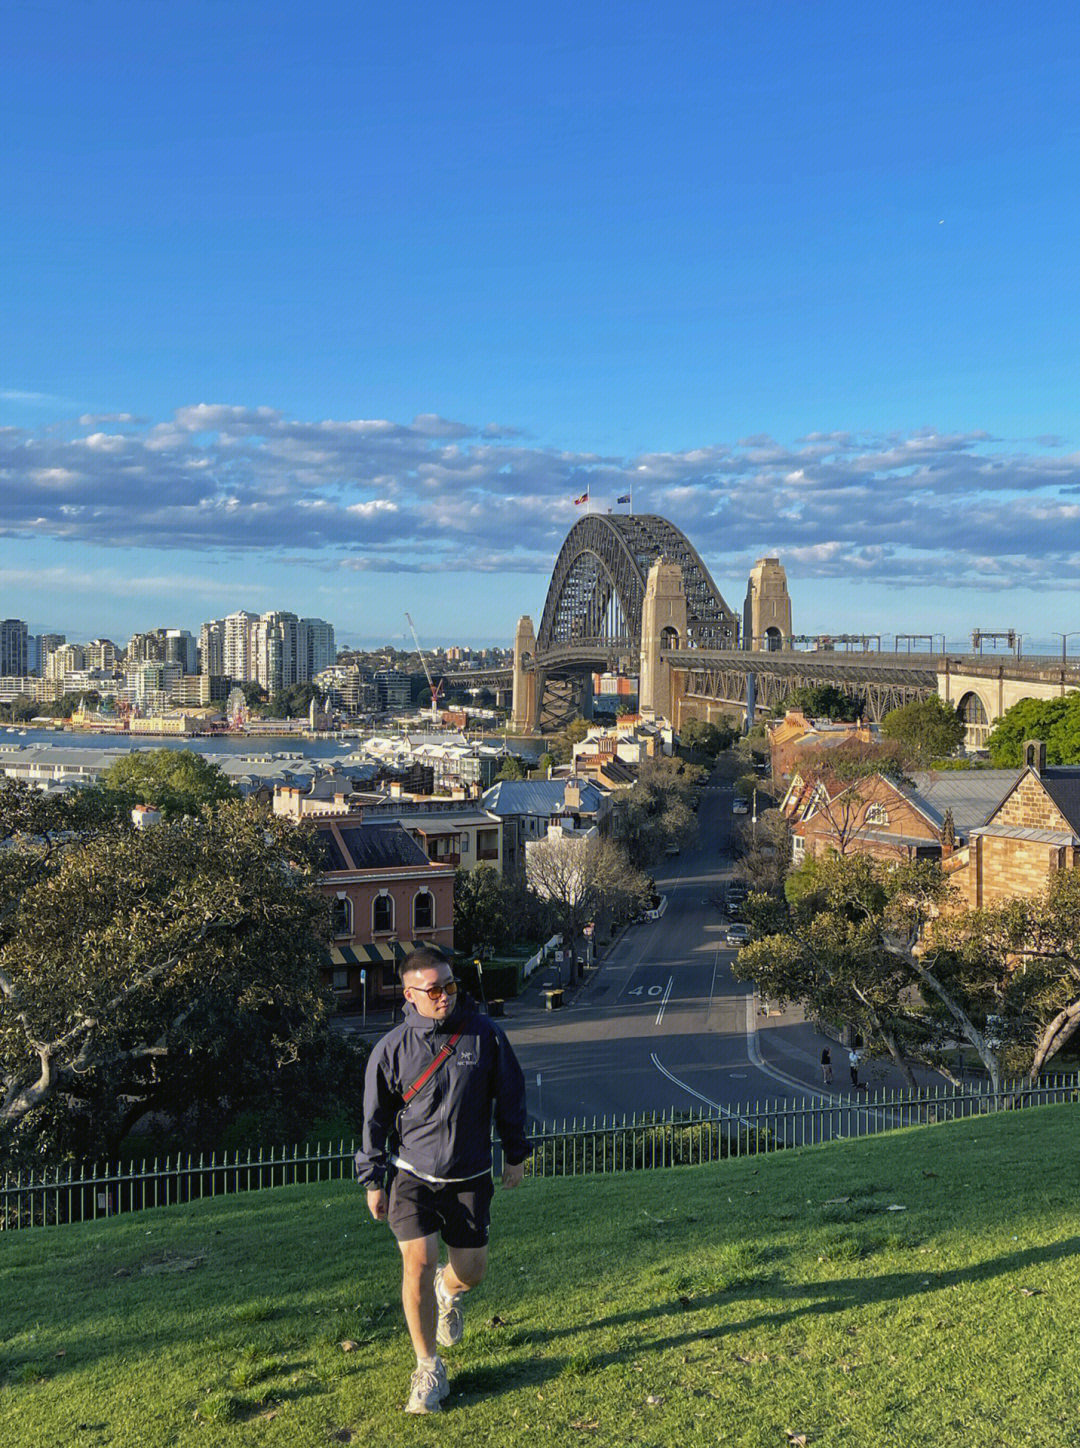 想要在悉尼拍个美美的异国风情照harbor bridge 肯定是不能少的由于